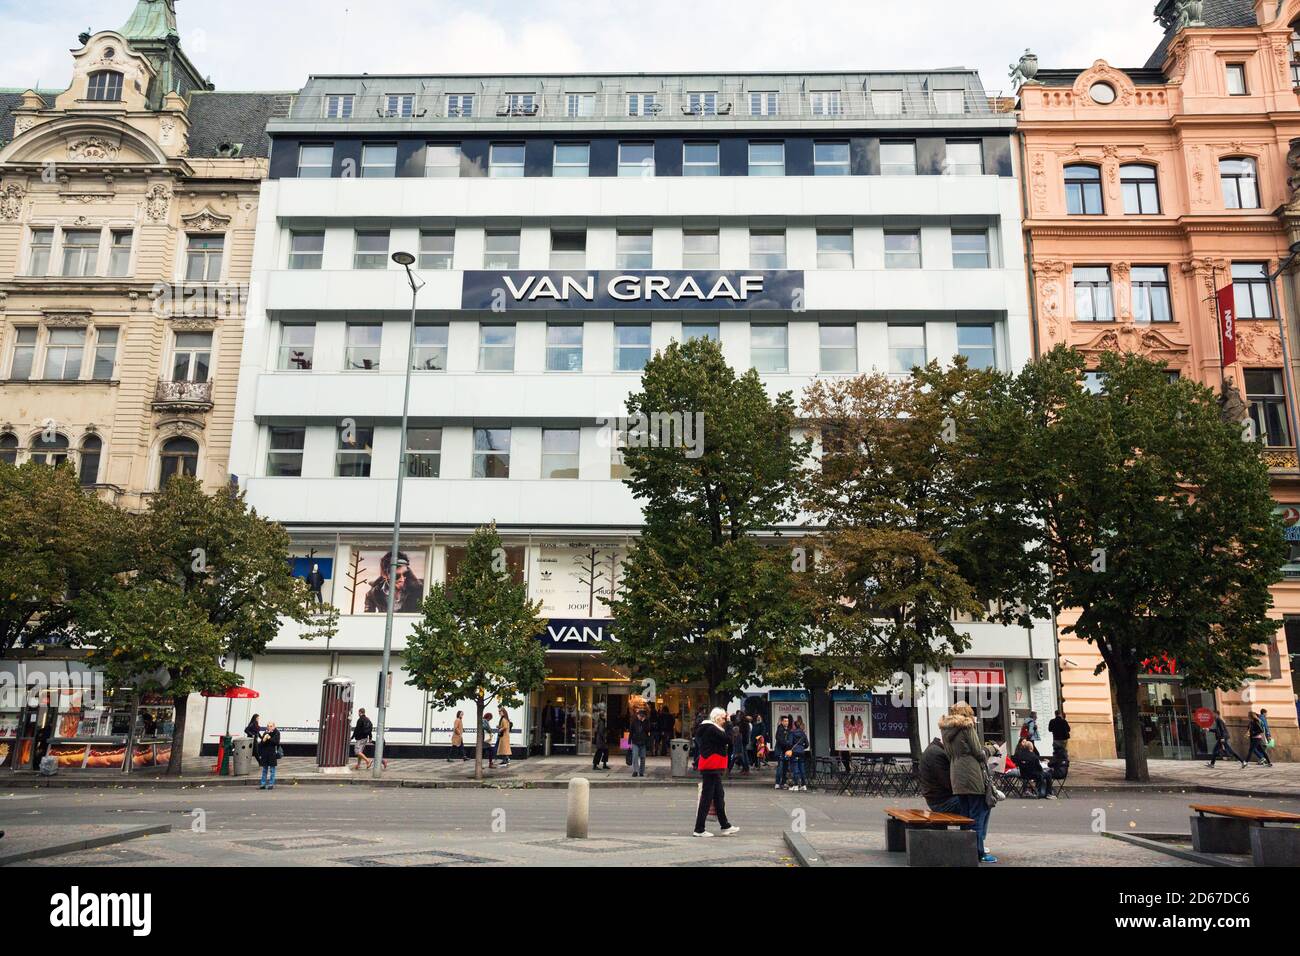 Van Graaf clothing store in Prague Stock Photo - Alamy